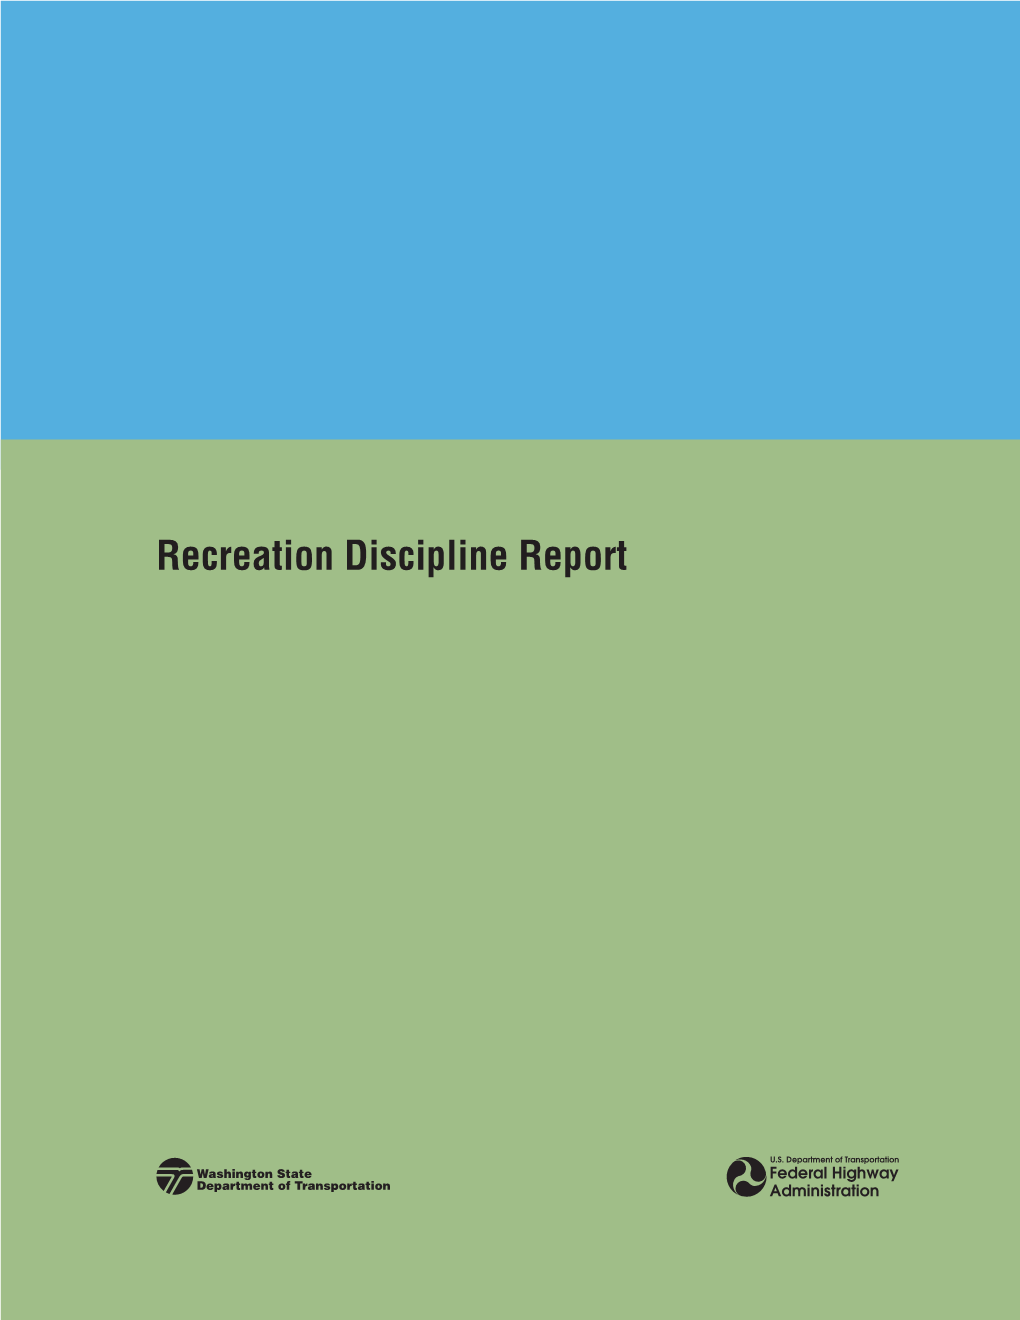 SR 520 SDEIS Recreation Discipline Report